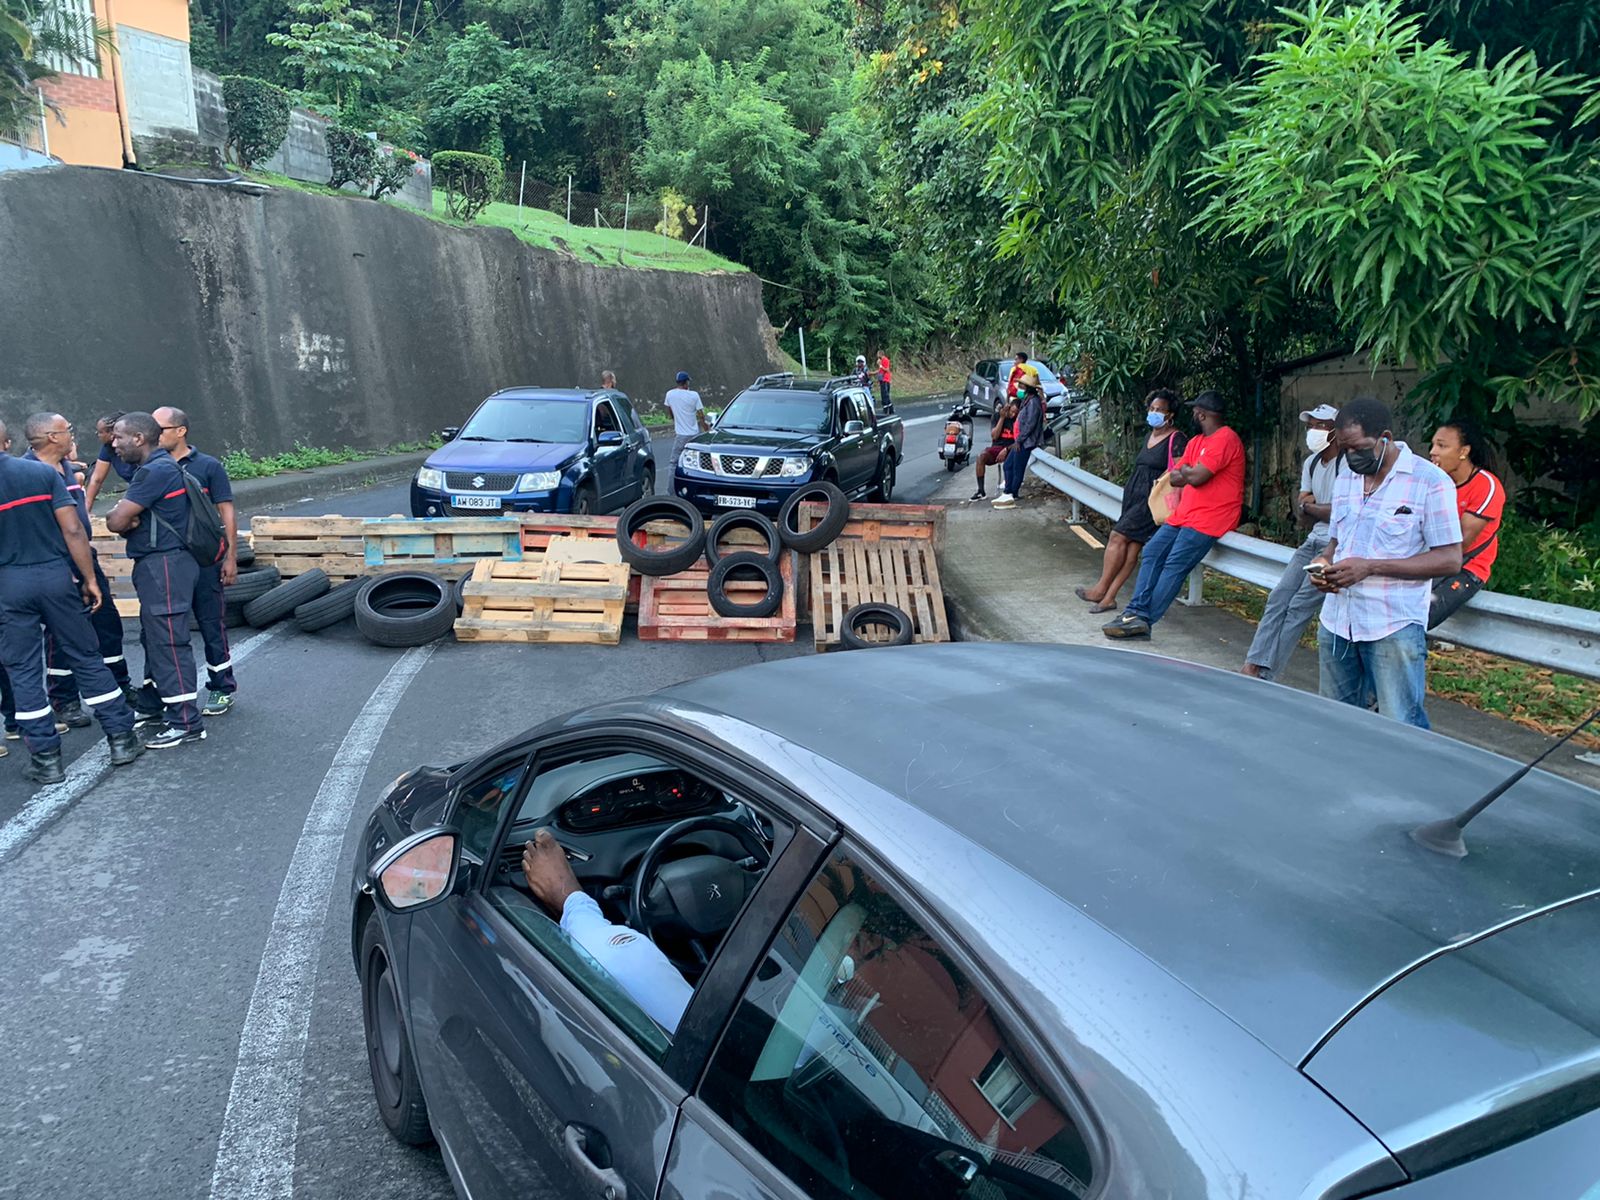     Les barrages routiers levés ce soir en Martinique

